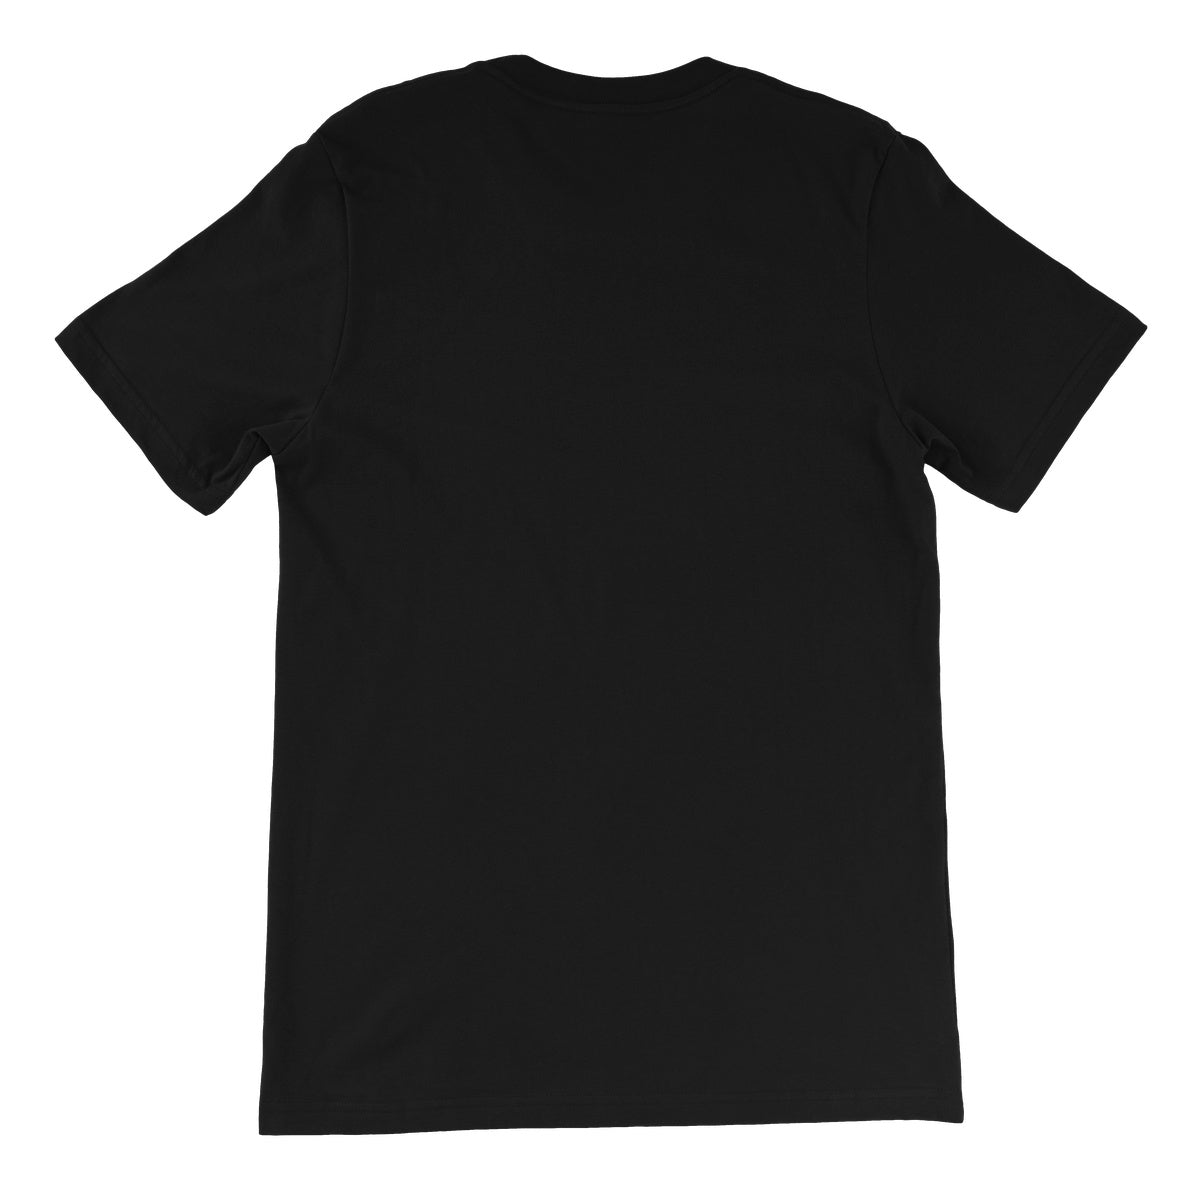 Sabu Hardcore Legend Unisex Short Sleeve T-Shirt